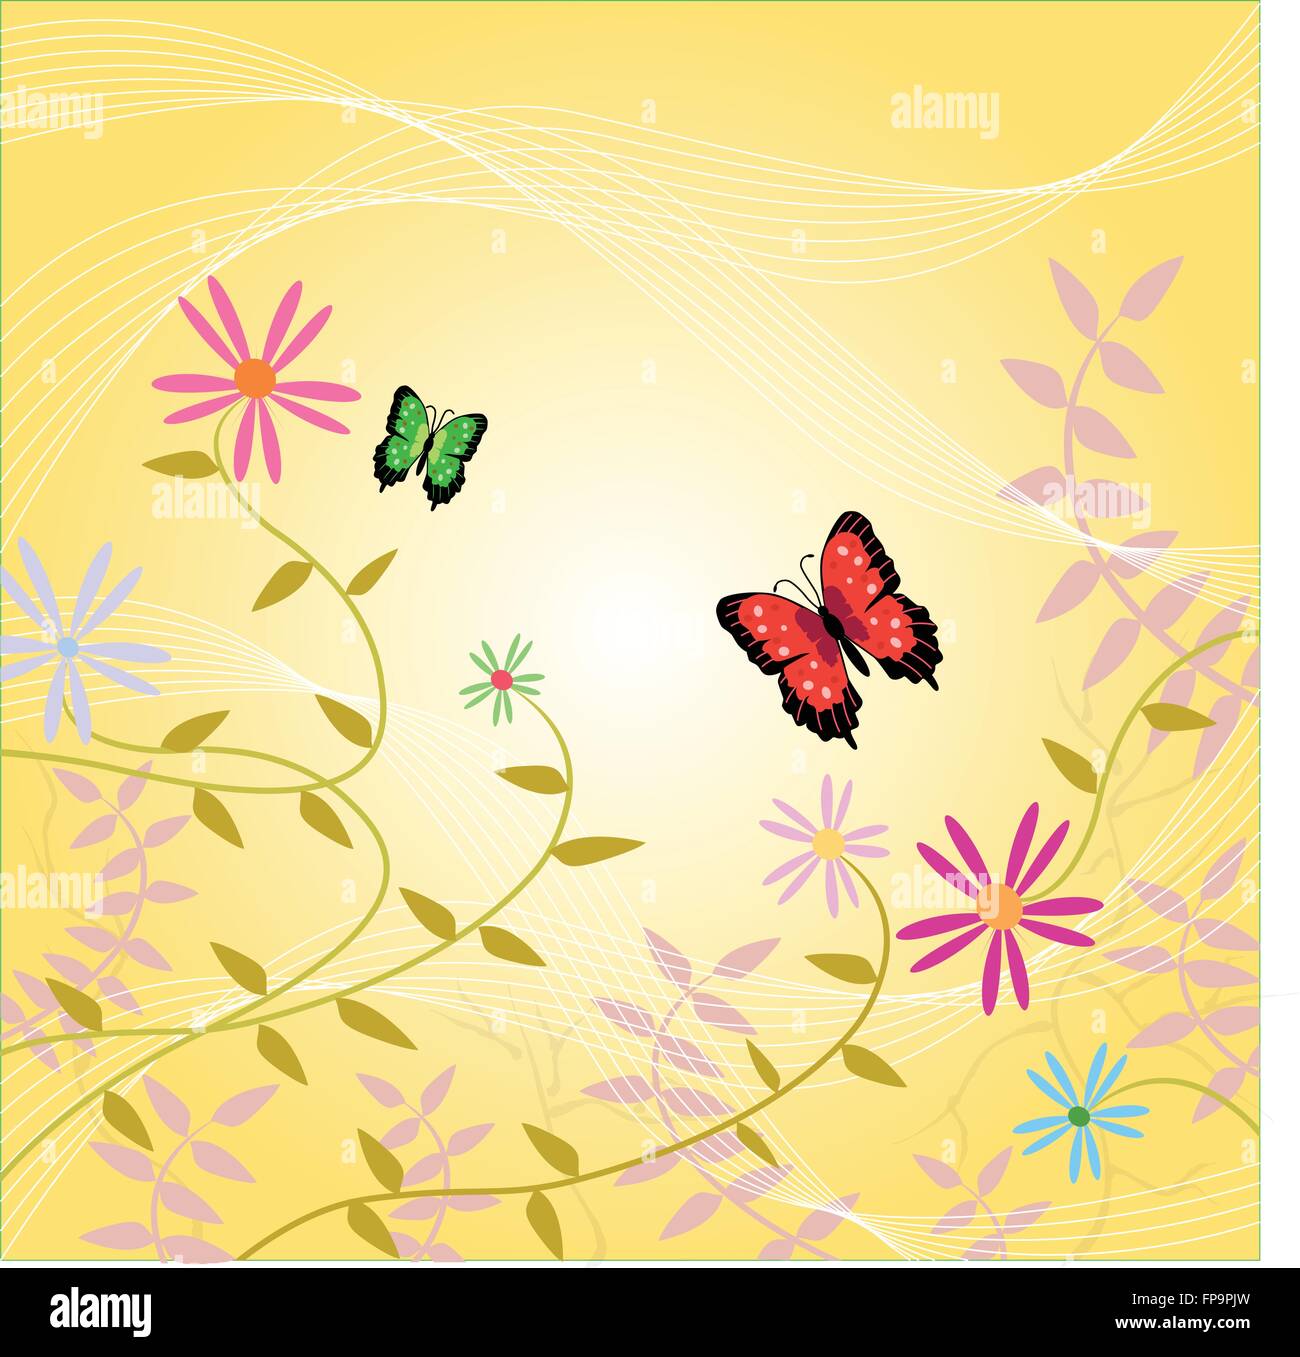 Image d'arrière-plan coloré de fleurs, de vignes et de papillons. Illustration de Vecteur